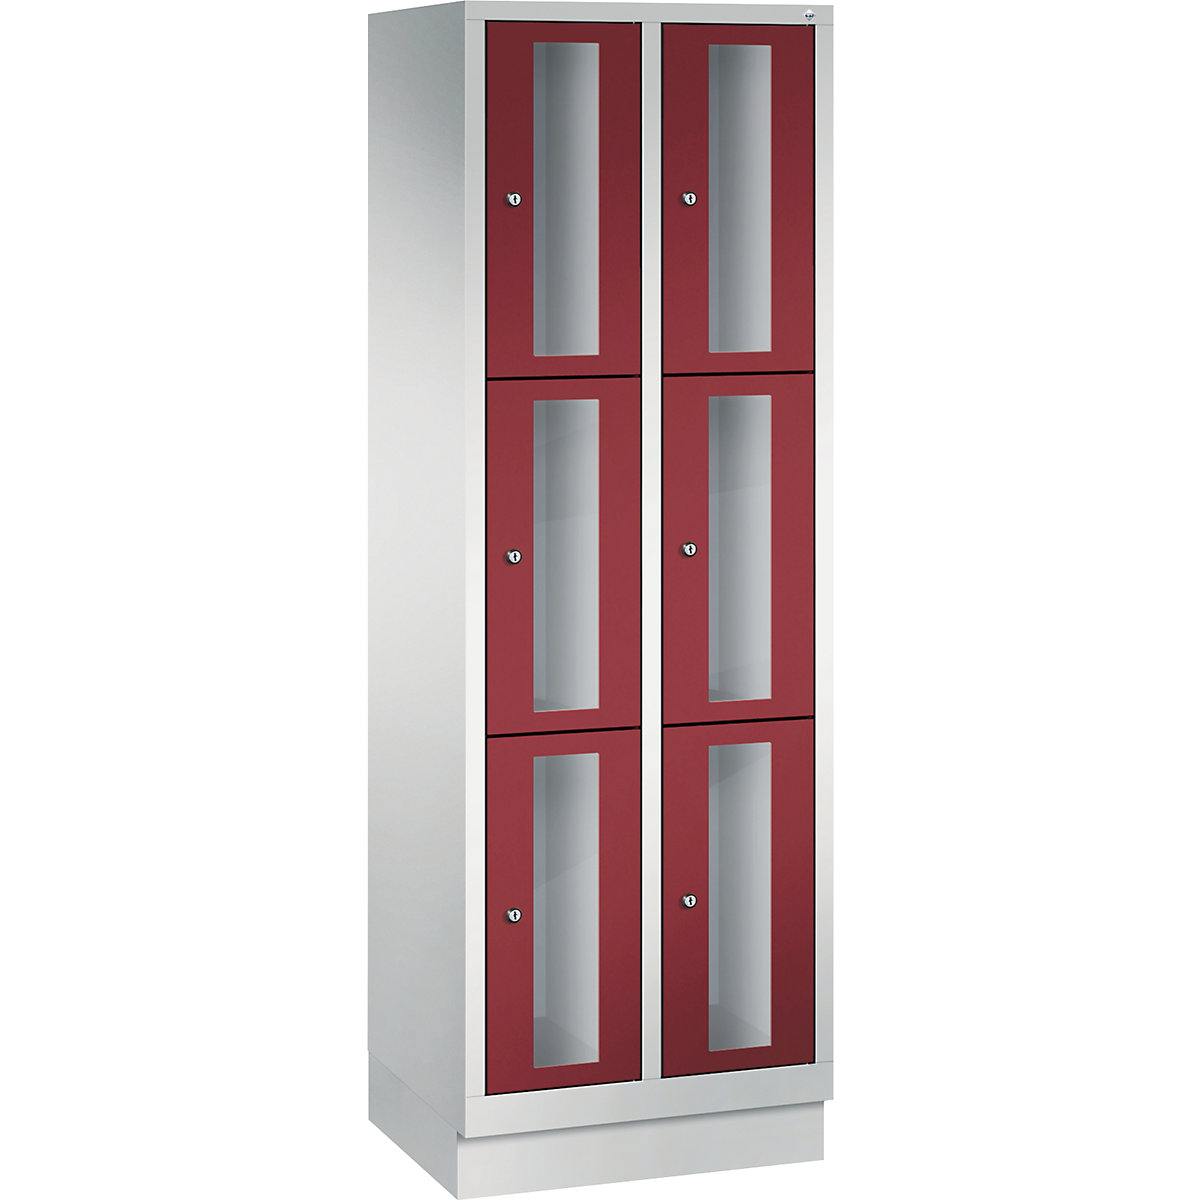 C+P – Armario de compartimentos CLASSIC, altura de compartimento 510 mm, con zócalo, 6 compartimentos de 610 mm de anchura, puerta en rojo rubí